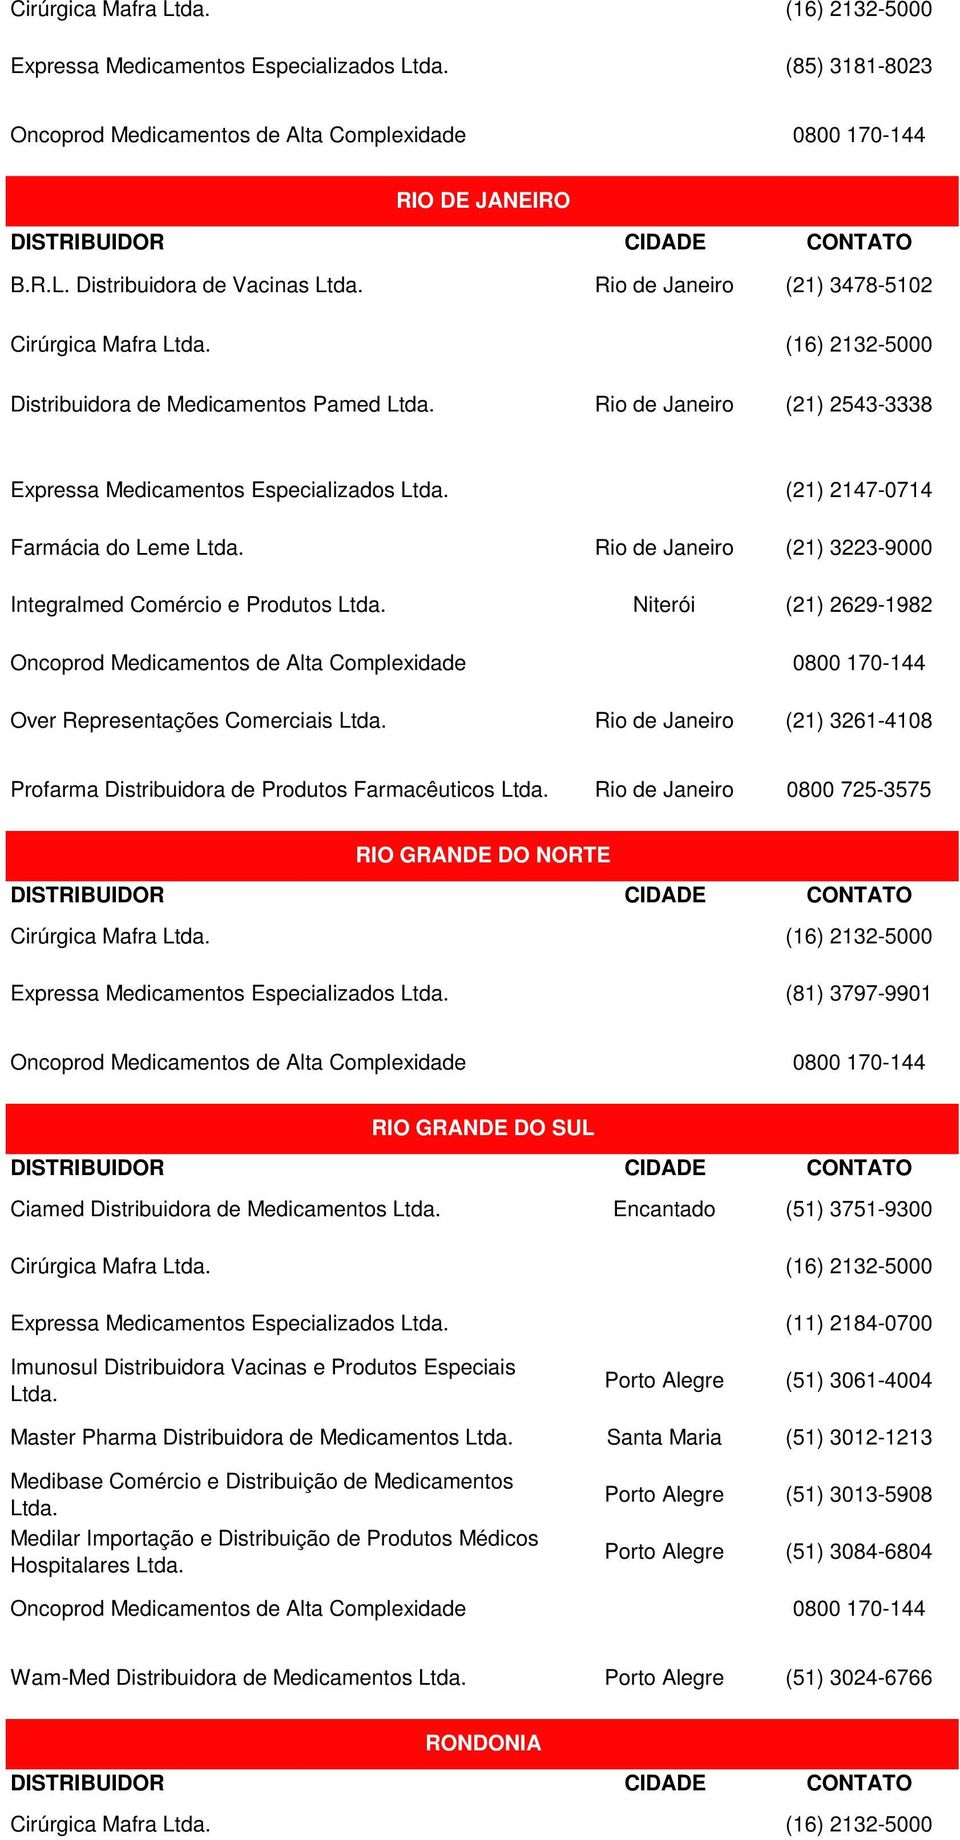 Over Representações Comerciais (21) 3261-4108 Profarma Distribuidora de Produtos Farmacêuticos 0800 725-3575 RIO GRANDE DO NORTE RIO GRANDE DO SUL Ciamed Distribuidora de Medicamentos Encantado